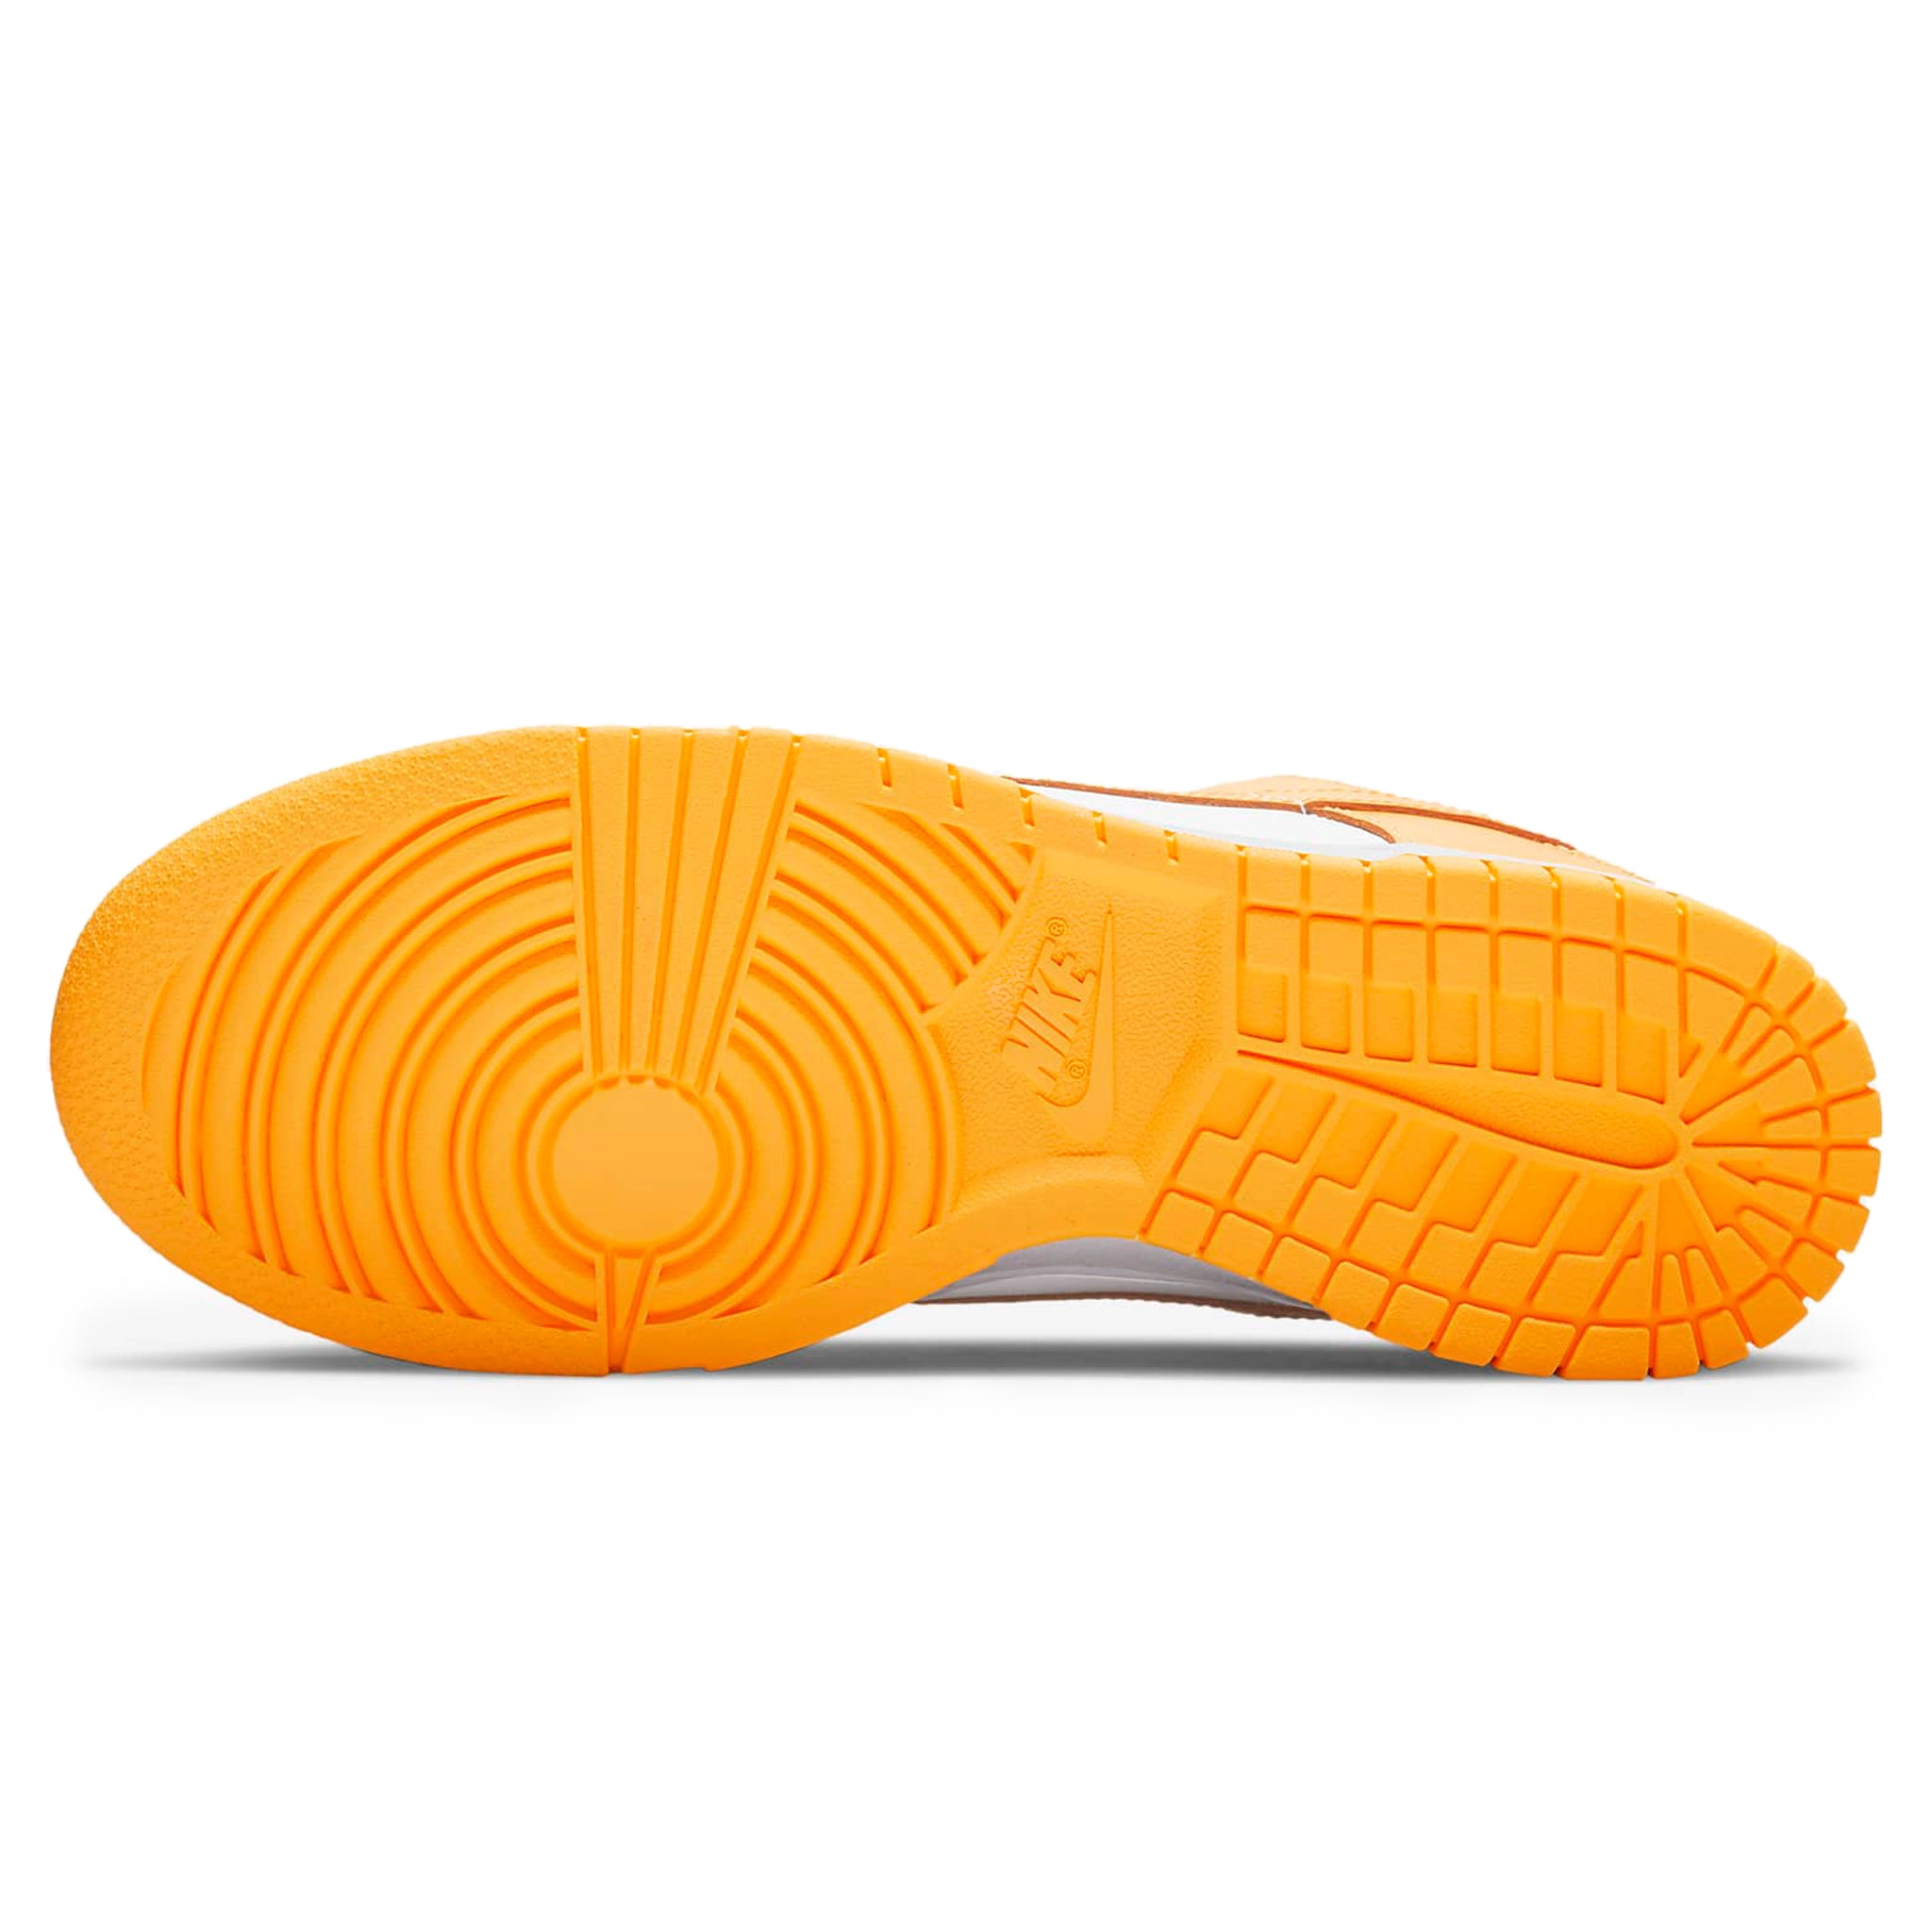 Sole view of Nike Dunk Low Laser Orange (W) DD1503-800